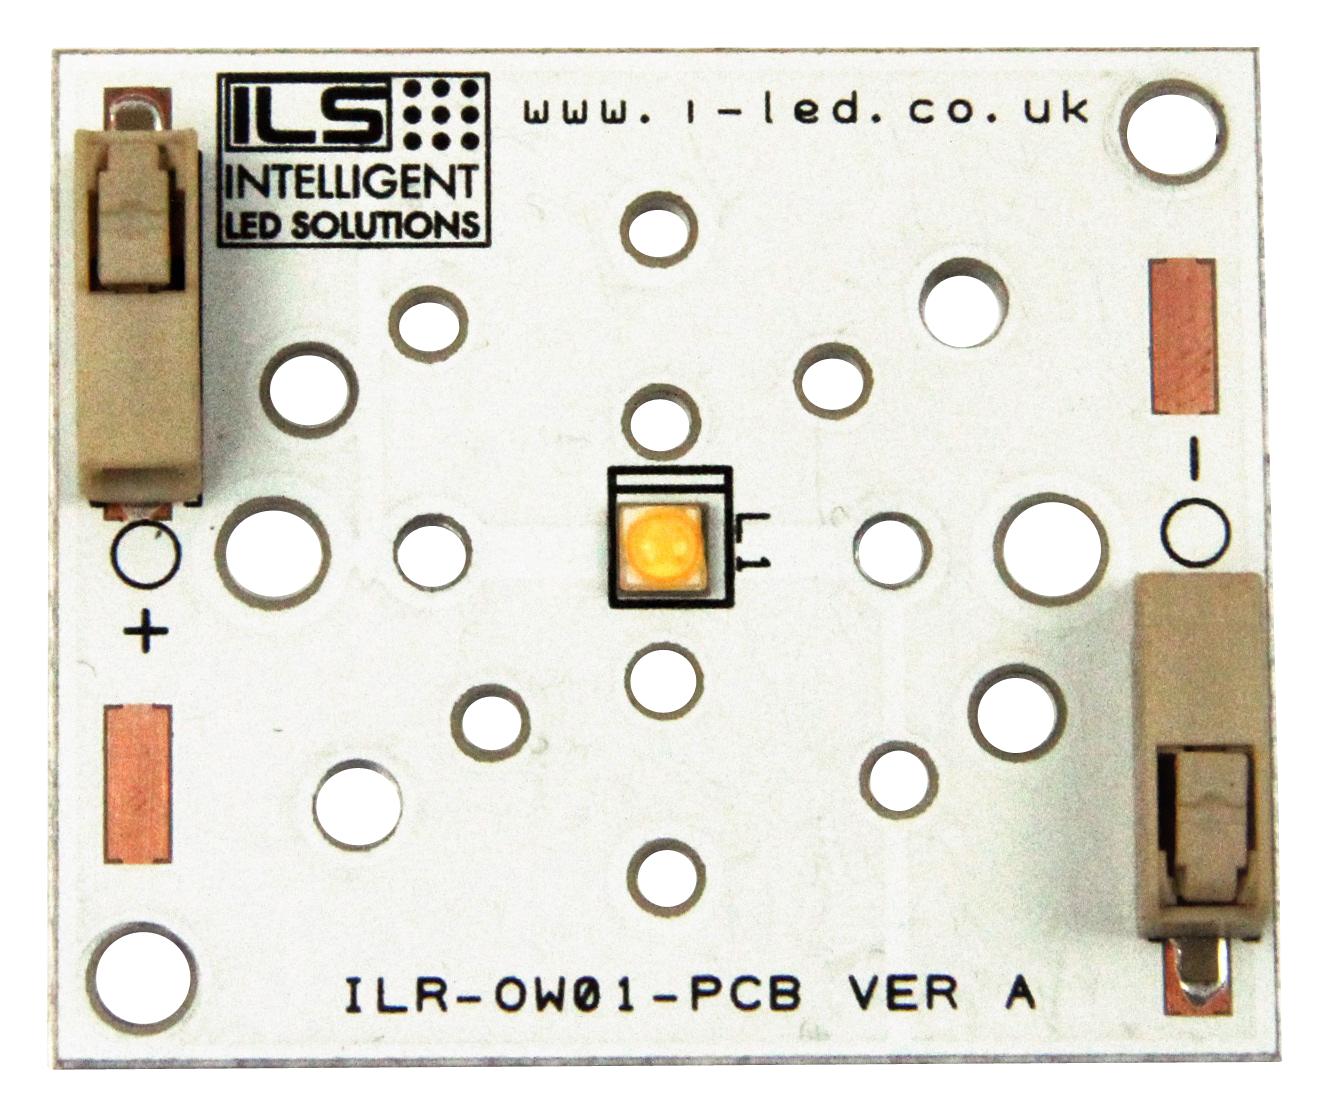 ILR-XP01-S270-LEDIL-SC201.